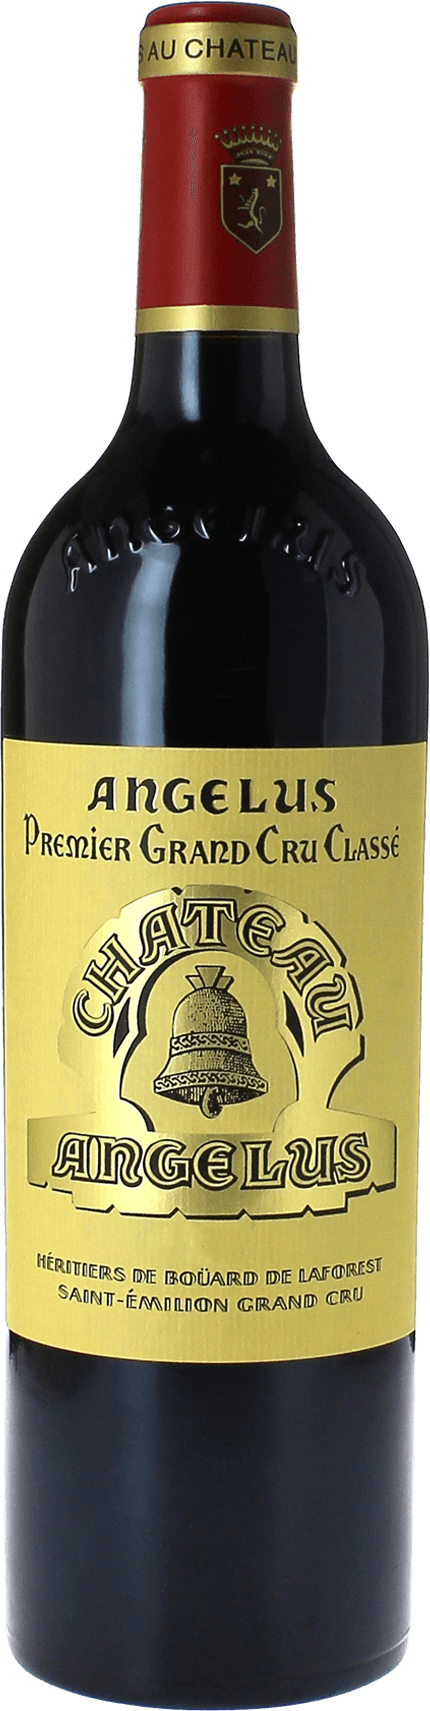 Angelus 1996 1er Grand cru class A Saint-Emilion, Bordeaux rouge